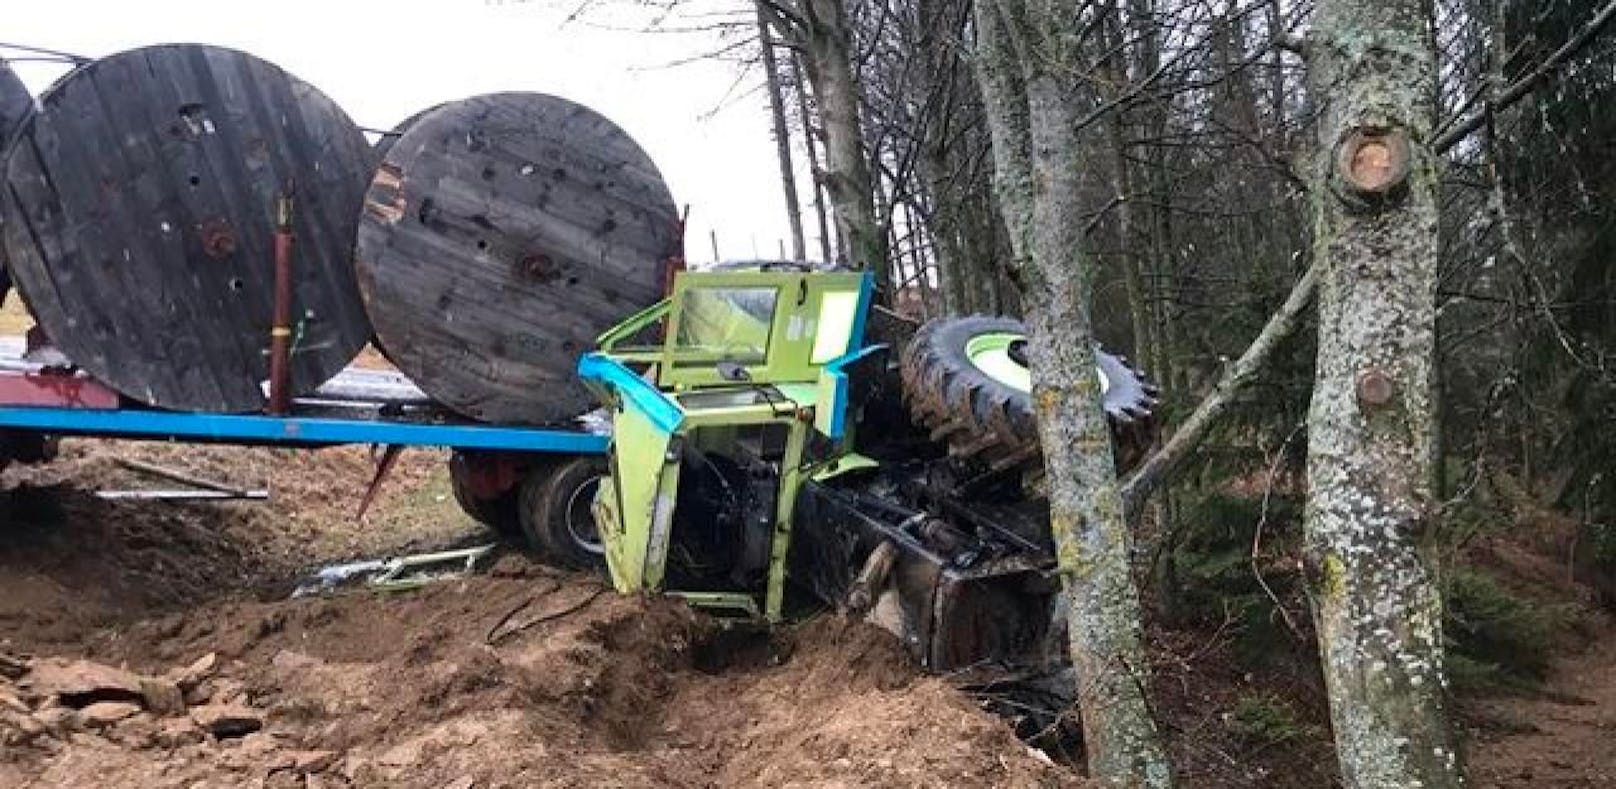 Mann (54) bei Absturz mit Traktor schwer verletzt